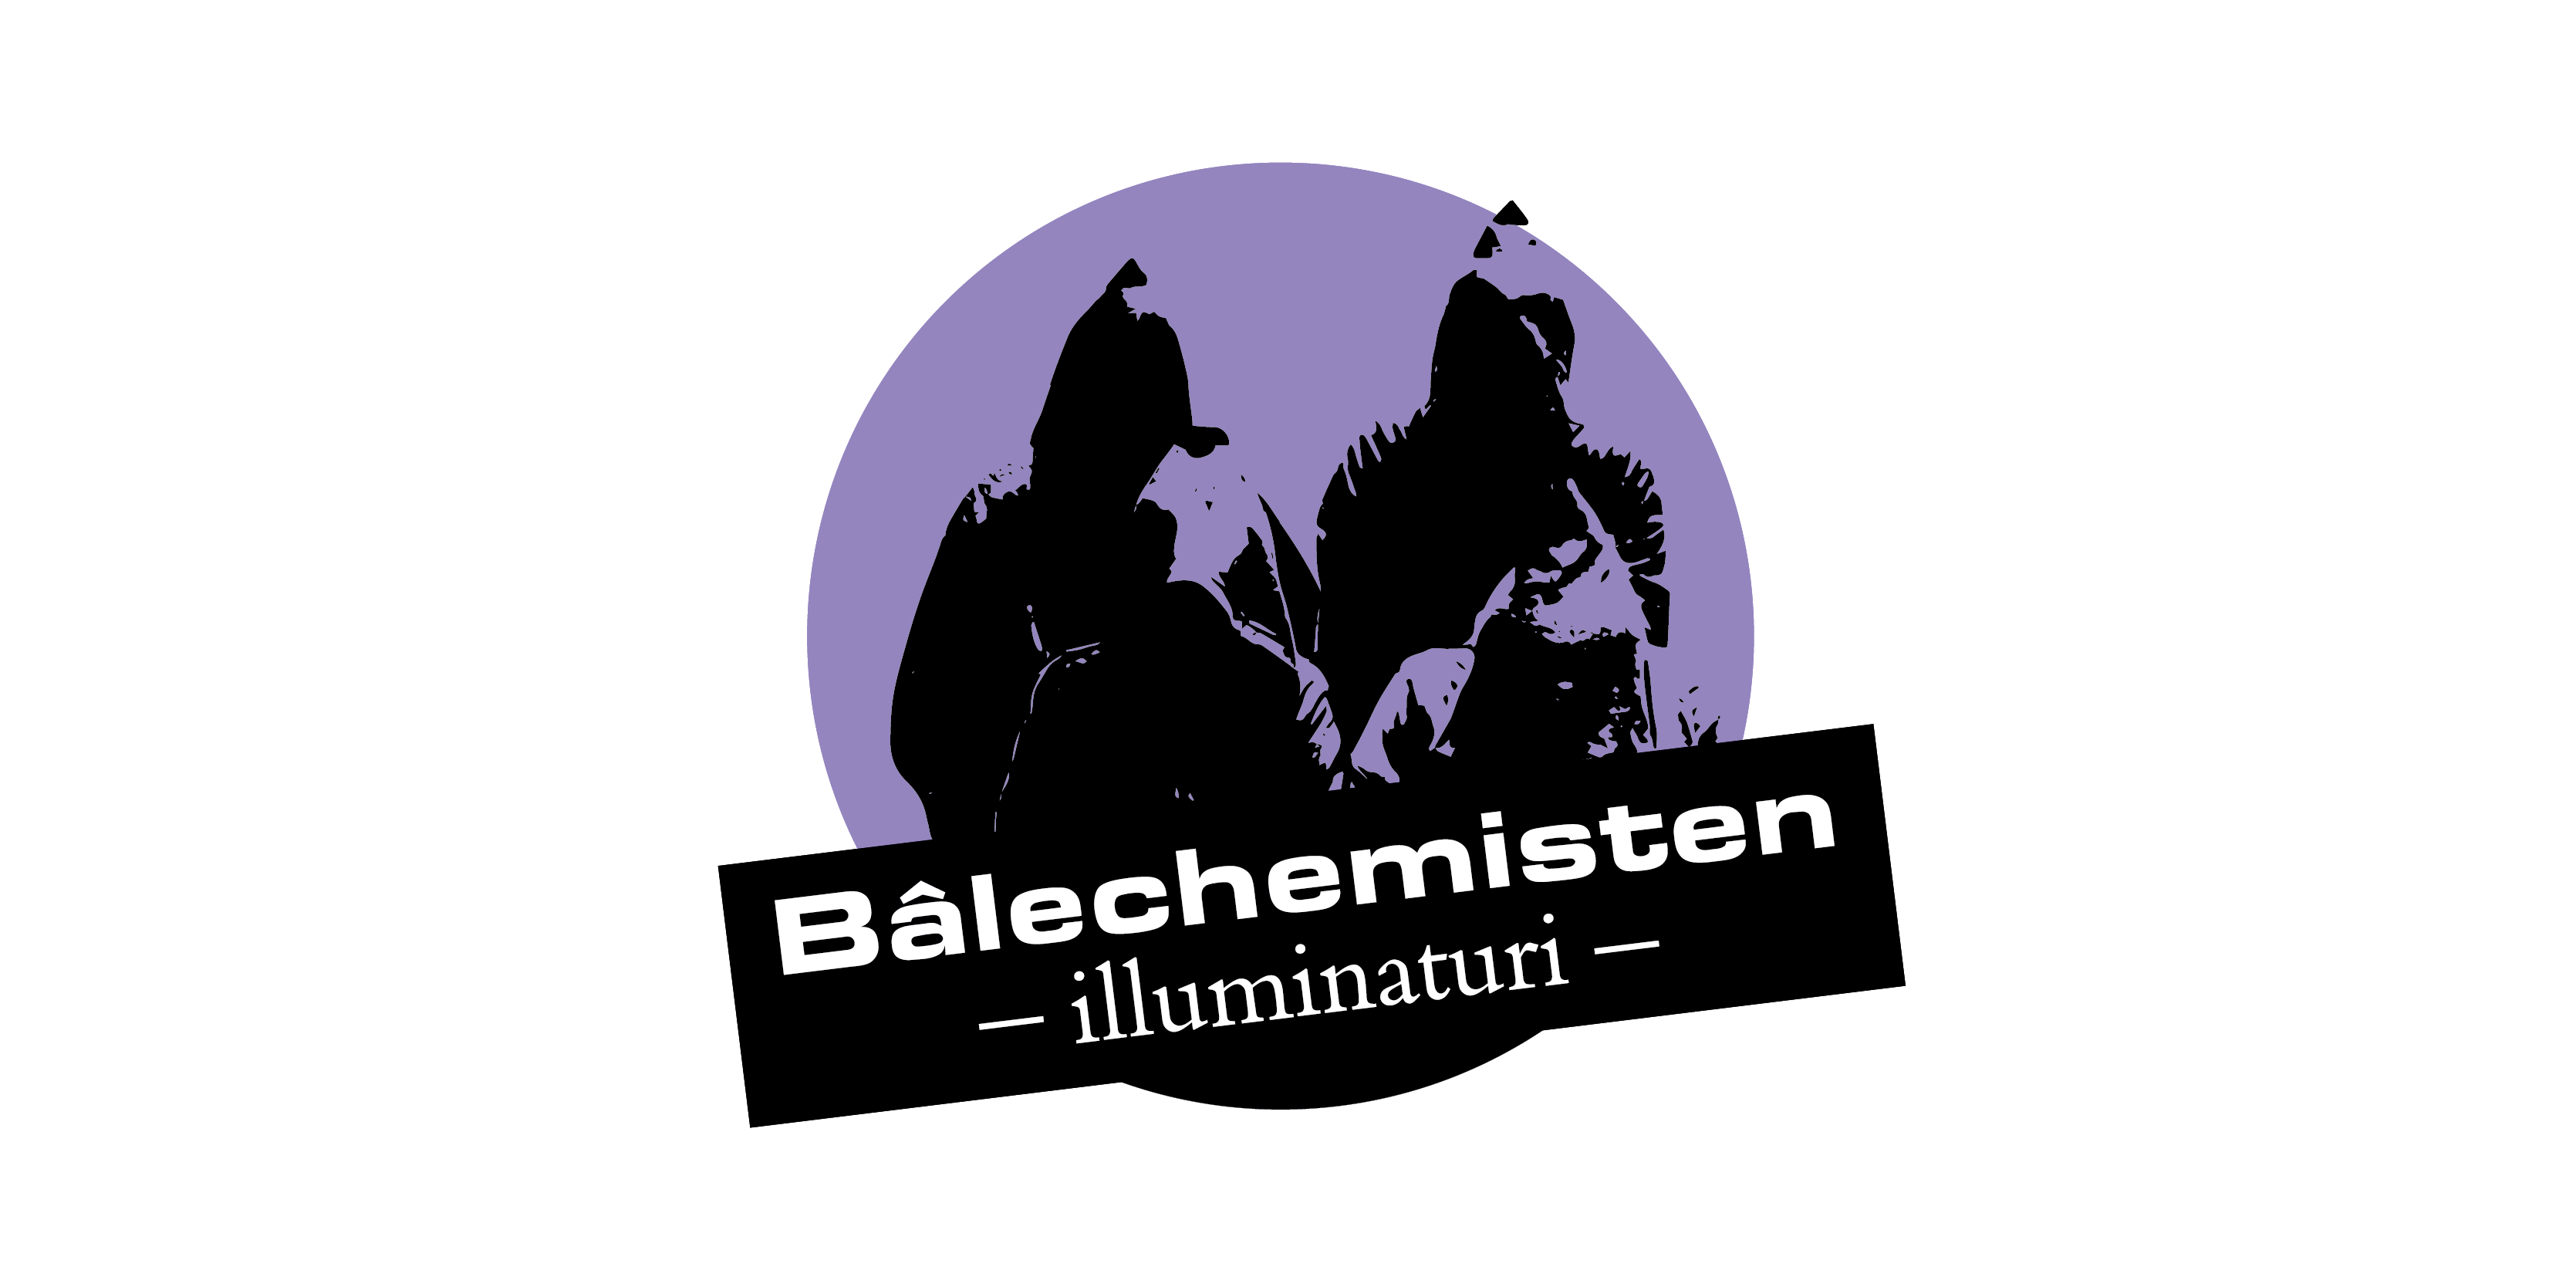 assets/games/balechemisten-logo.png